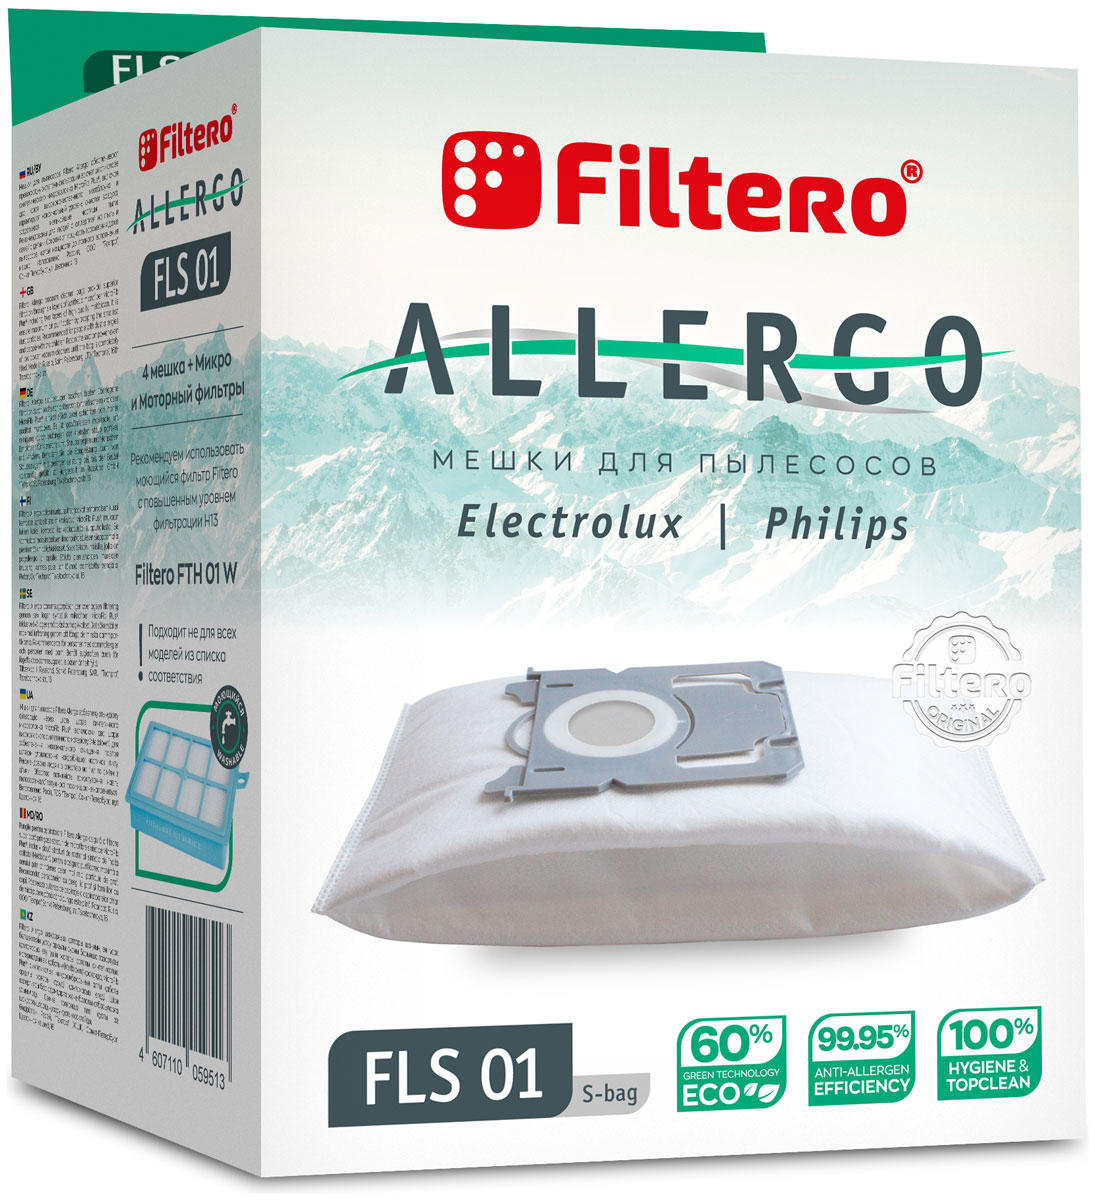 пылесборники filtero fls 01 s bag allergo 4 шт моторный фильтр и микрофильтр Пылесборники Filtero FLS 01 S-bag Allergo 4 шт. + моторный фильтр и микрофильтр